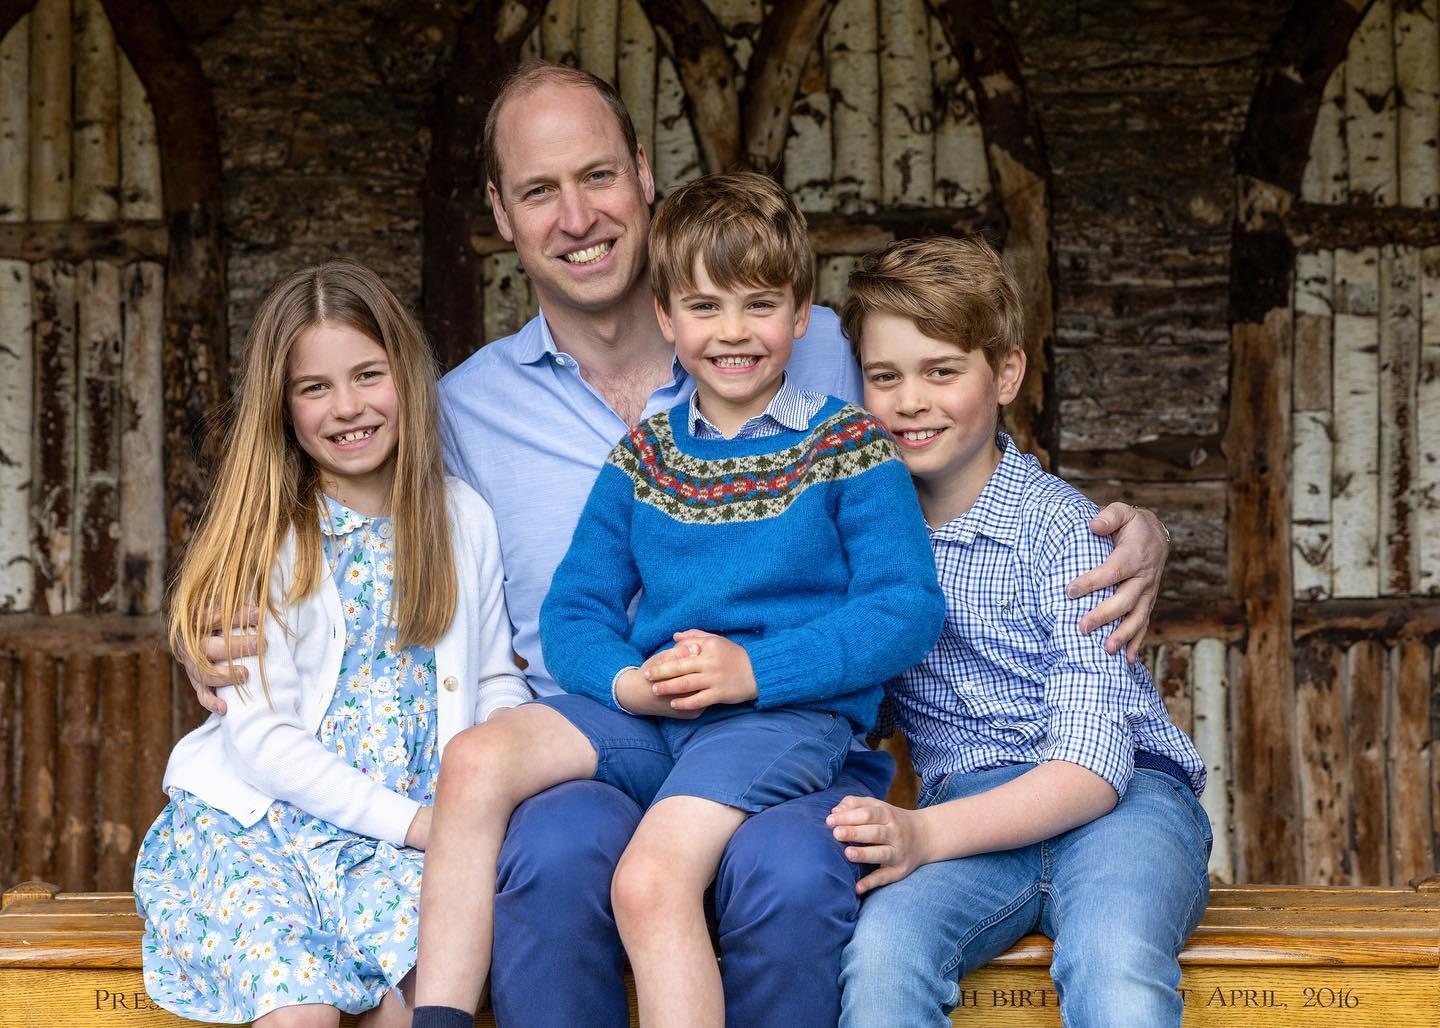 фото семьи принца уильяма с детьми